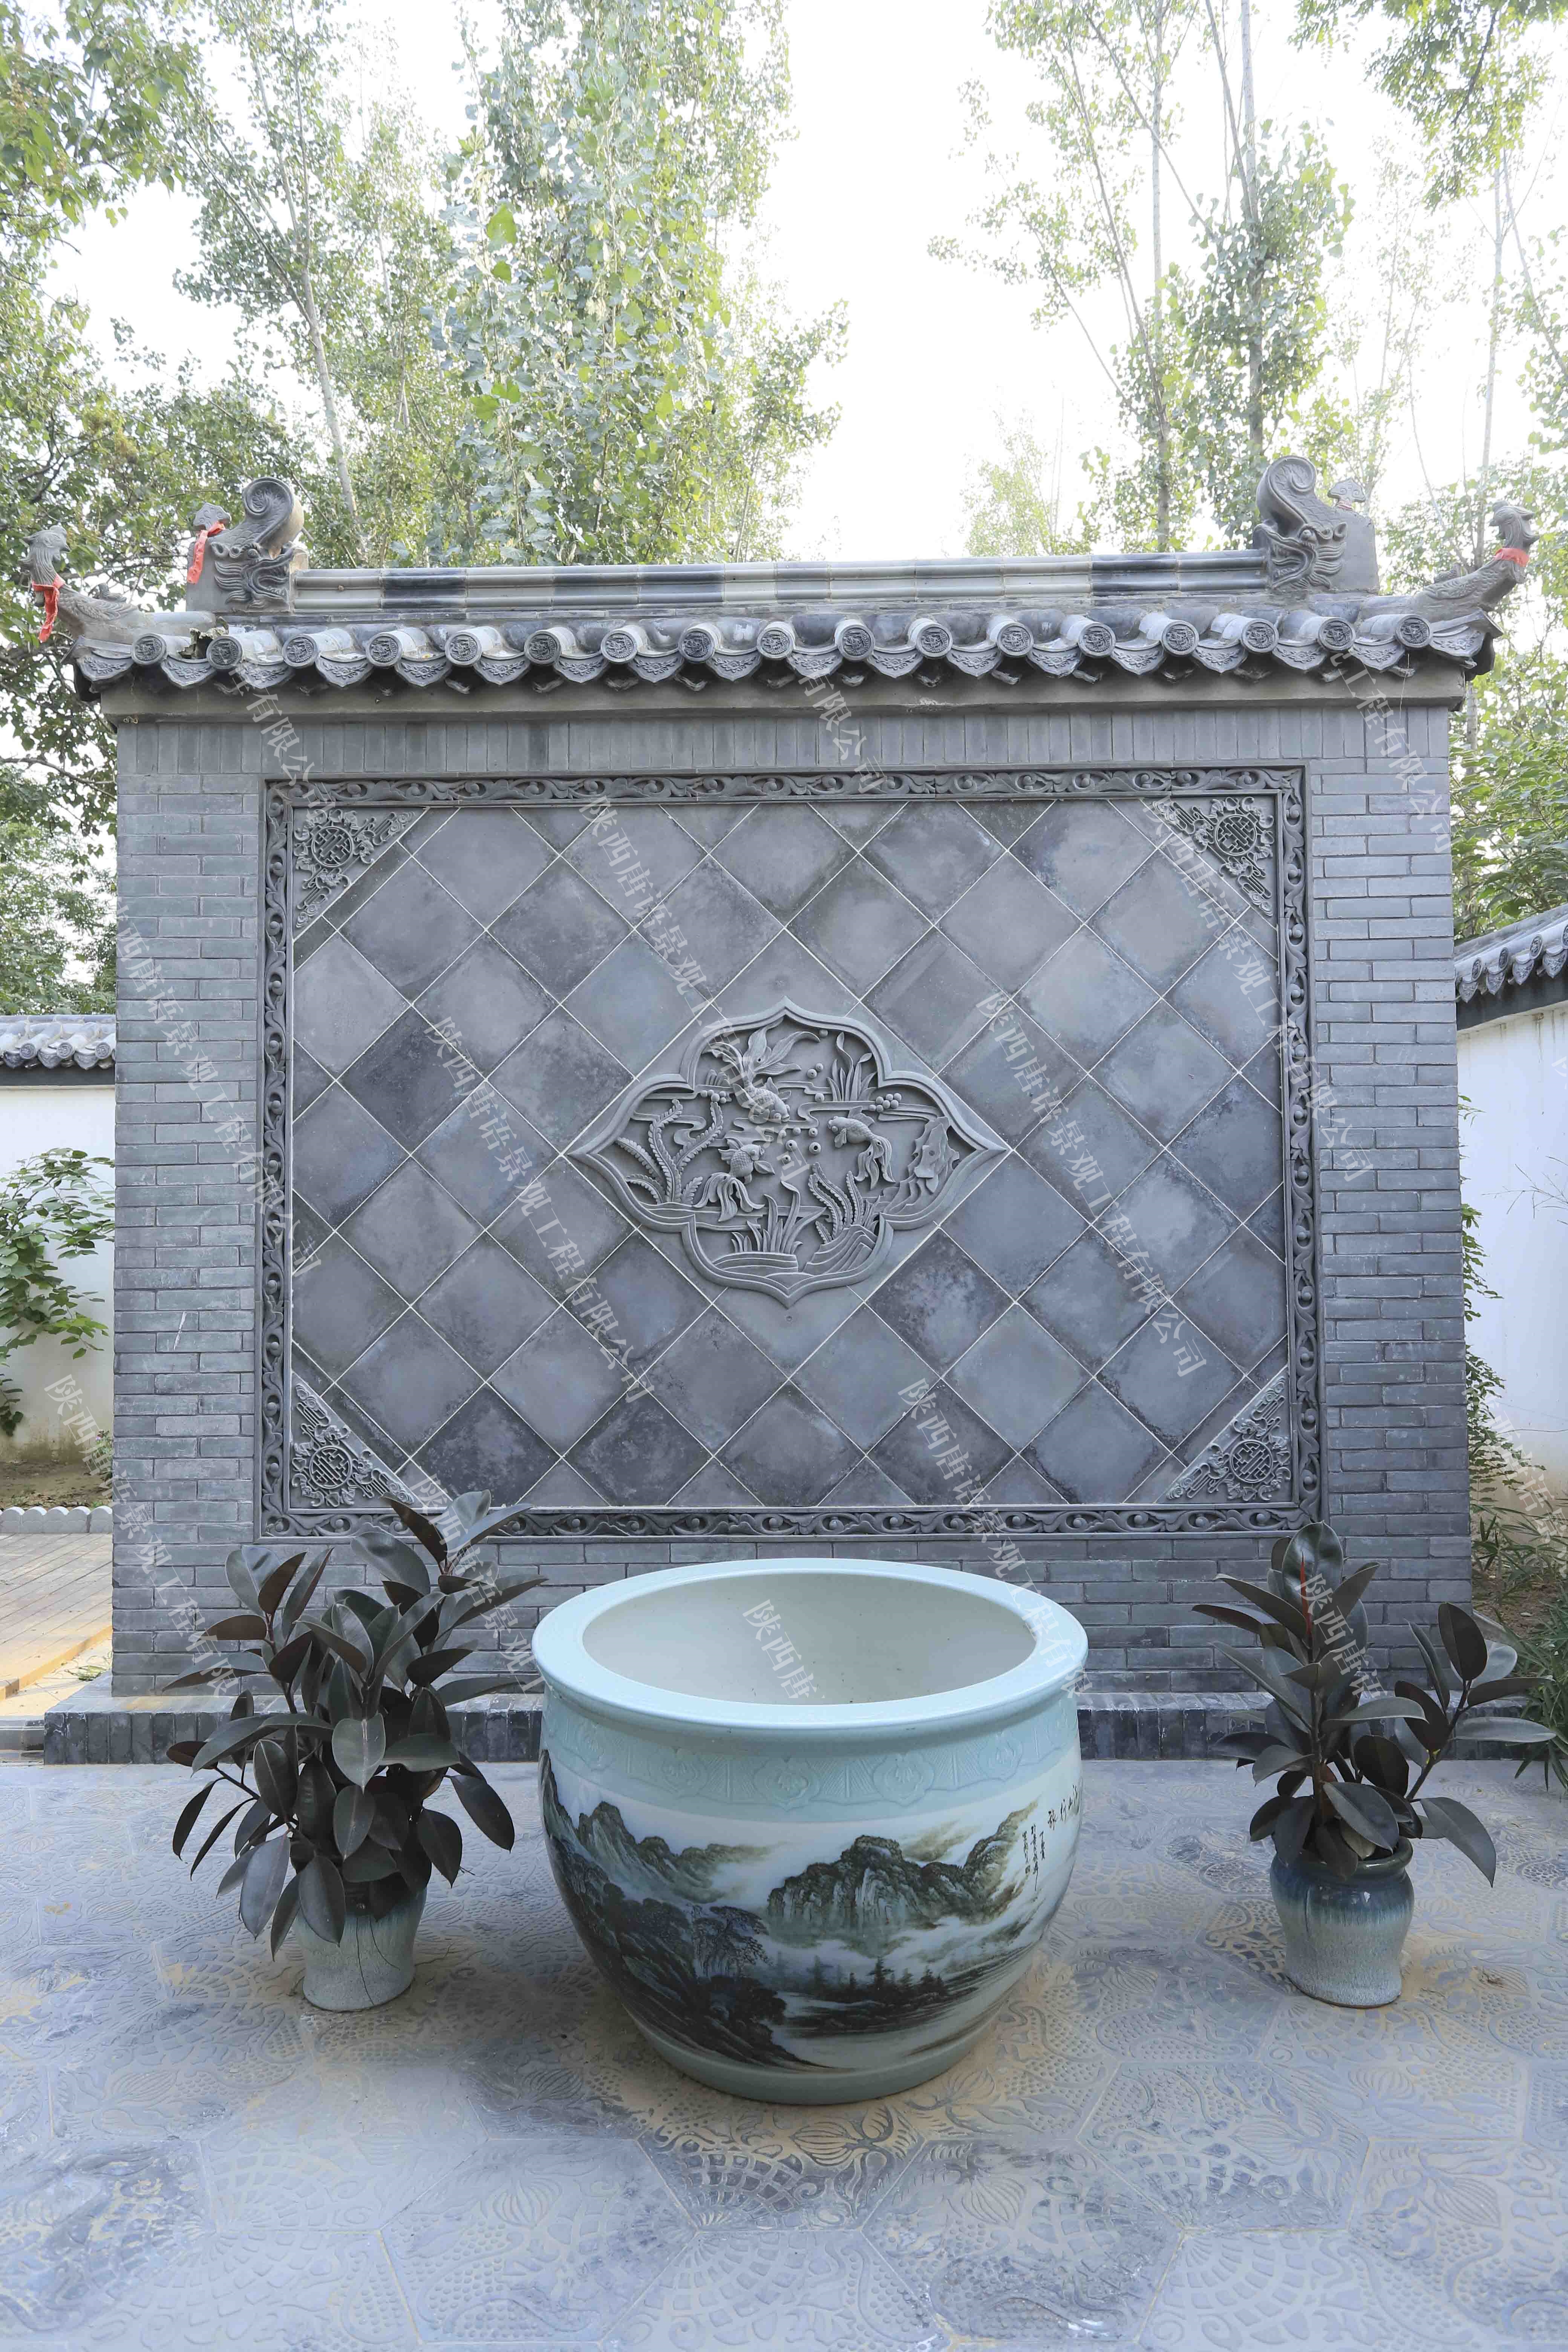 中式庭院中的砖雕照壁,中国上下几千年的历史,庭院文化也是延续至今